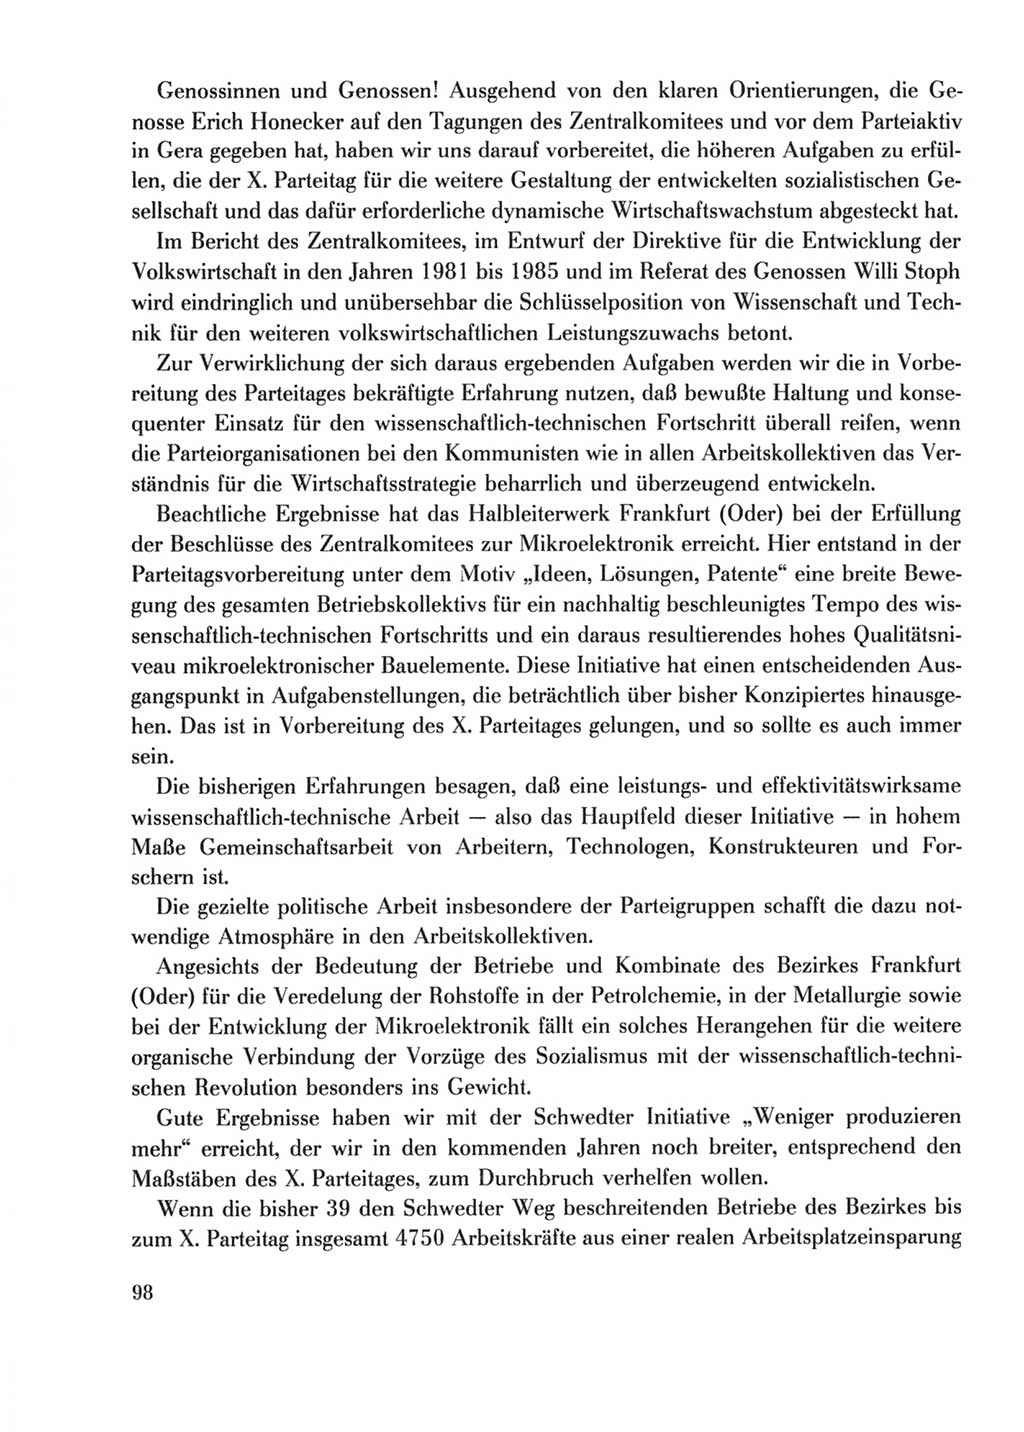 Protokoll der Verhandlungen des Ⅹ. Parteitages der Sozialistischen Einheitspartei Deutschlands (SED) [Deutsche Demokratische Republik (DDR)] 1981, Band 2, Seite 98 (Prot. Verh. Ⅹ. PT SED DDR 1981, Bd. 2, S. 98)